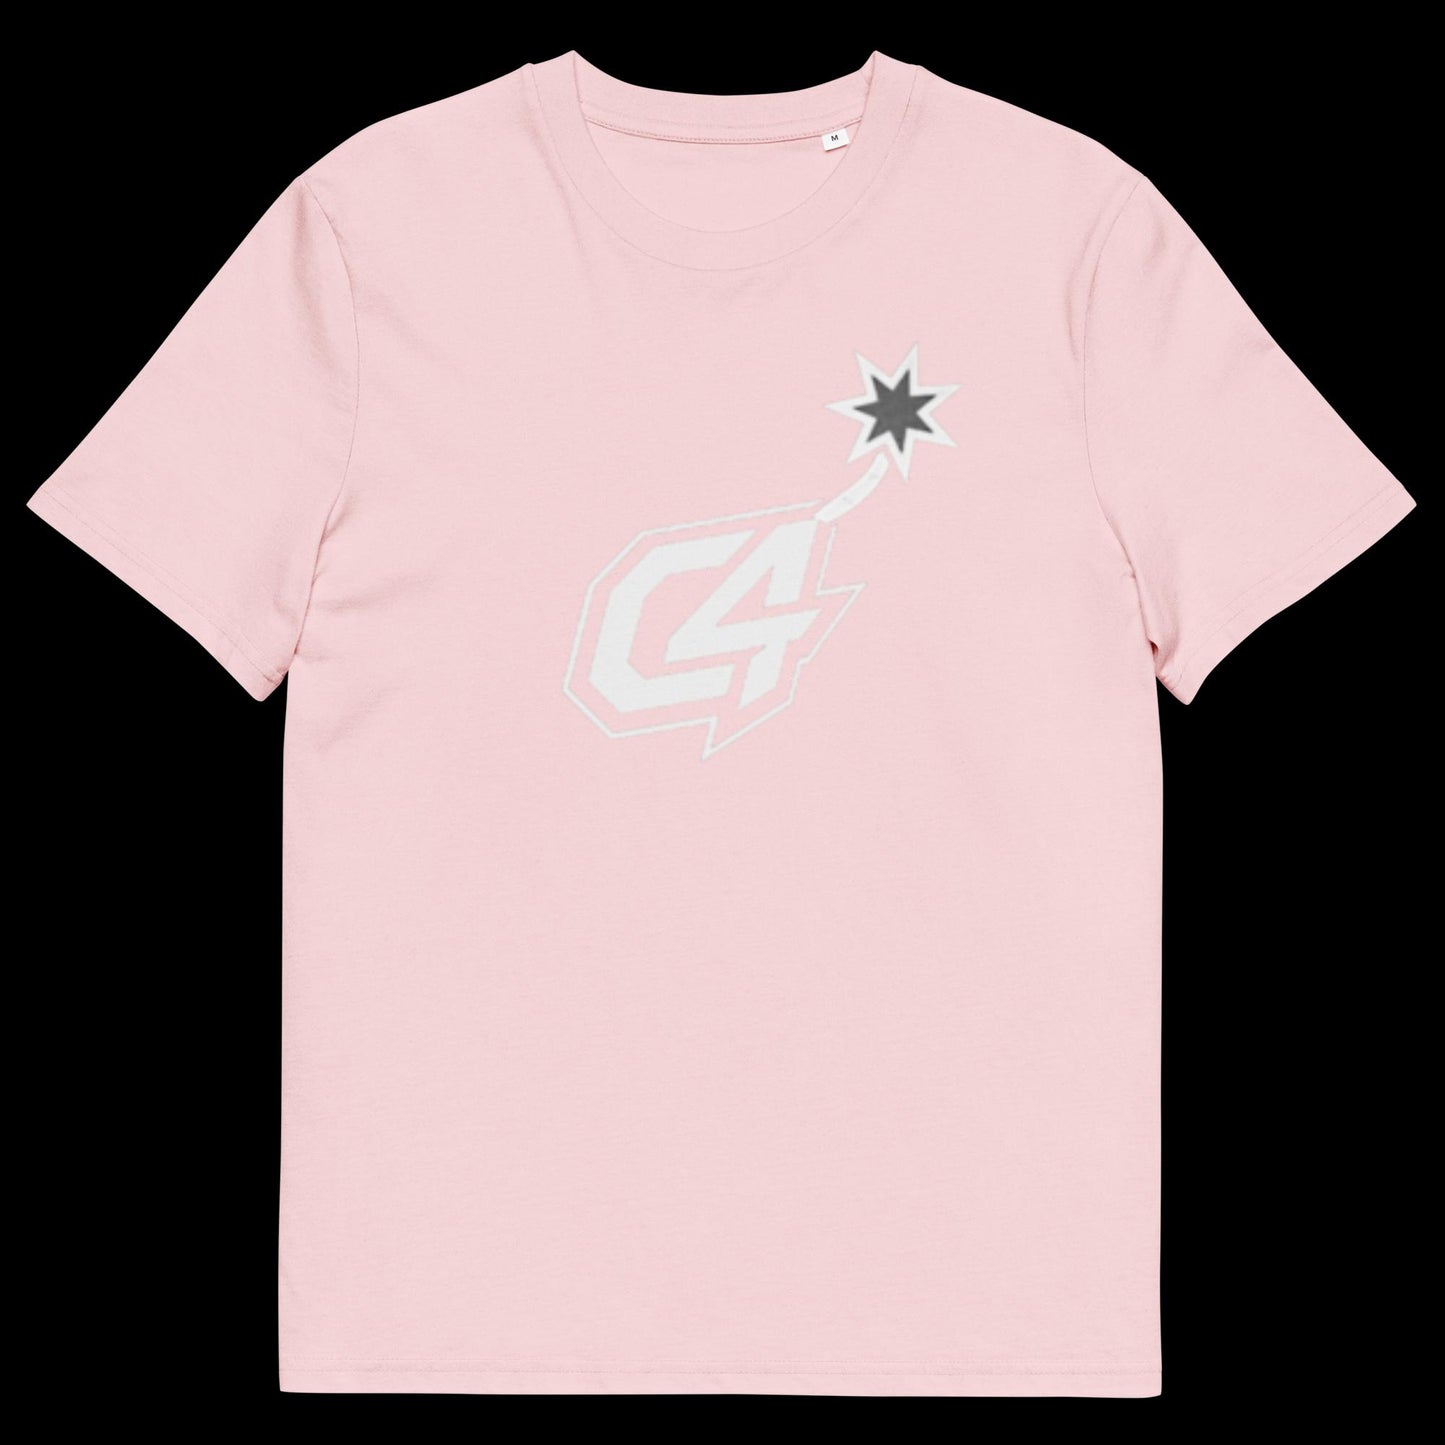 Carmelo Brown "C4" VOL 1 (LOGO) Unisex cotton t-shirt